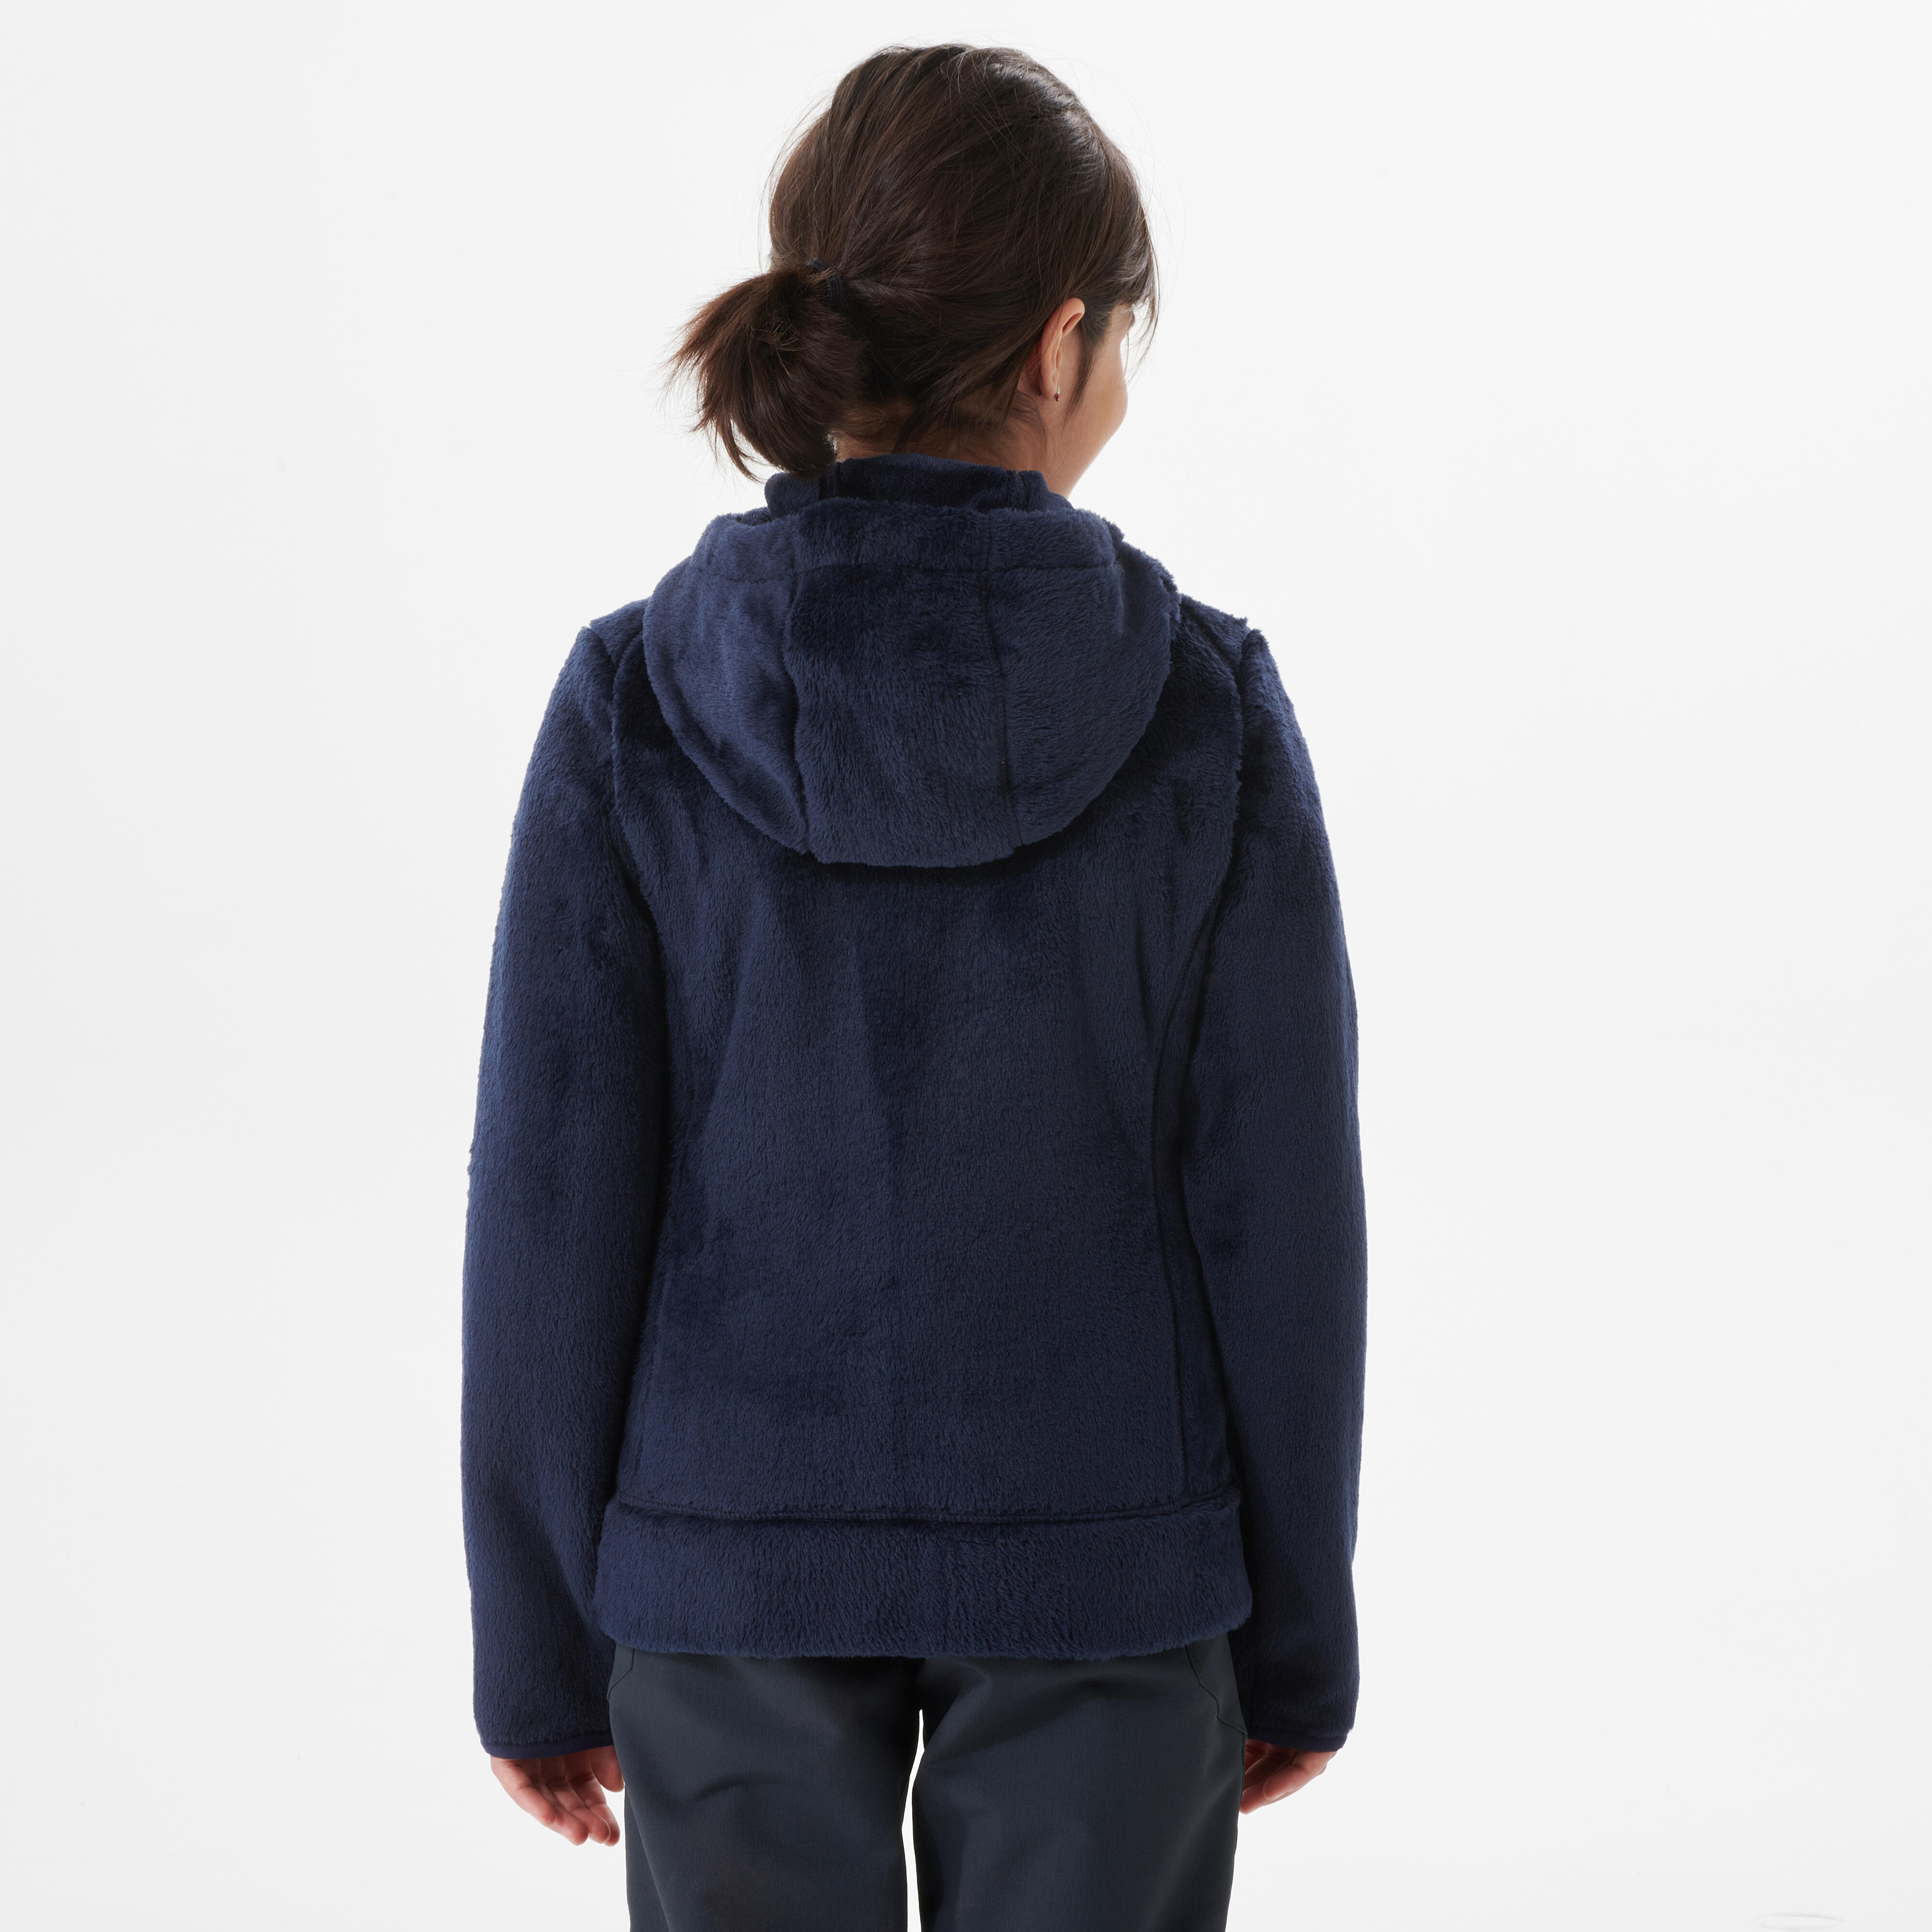 Manteau en laine polaire enfant – MH 500 Warm bleu - QUECHUA